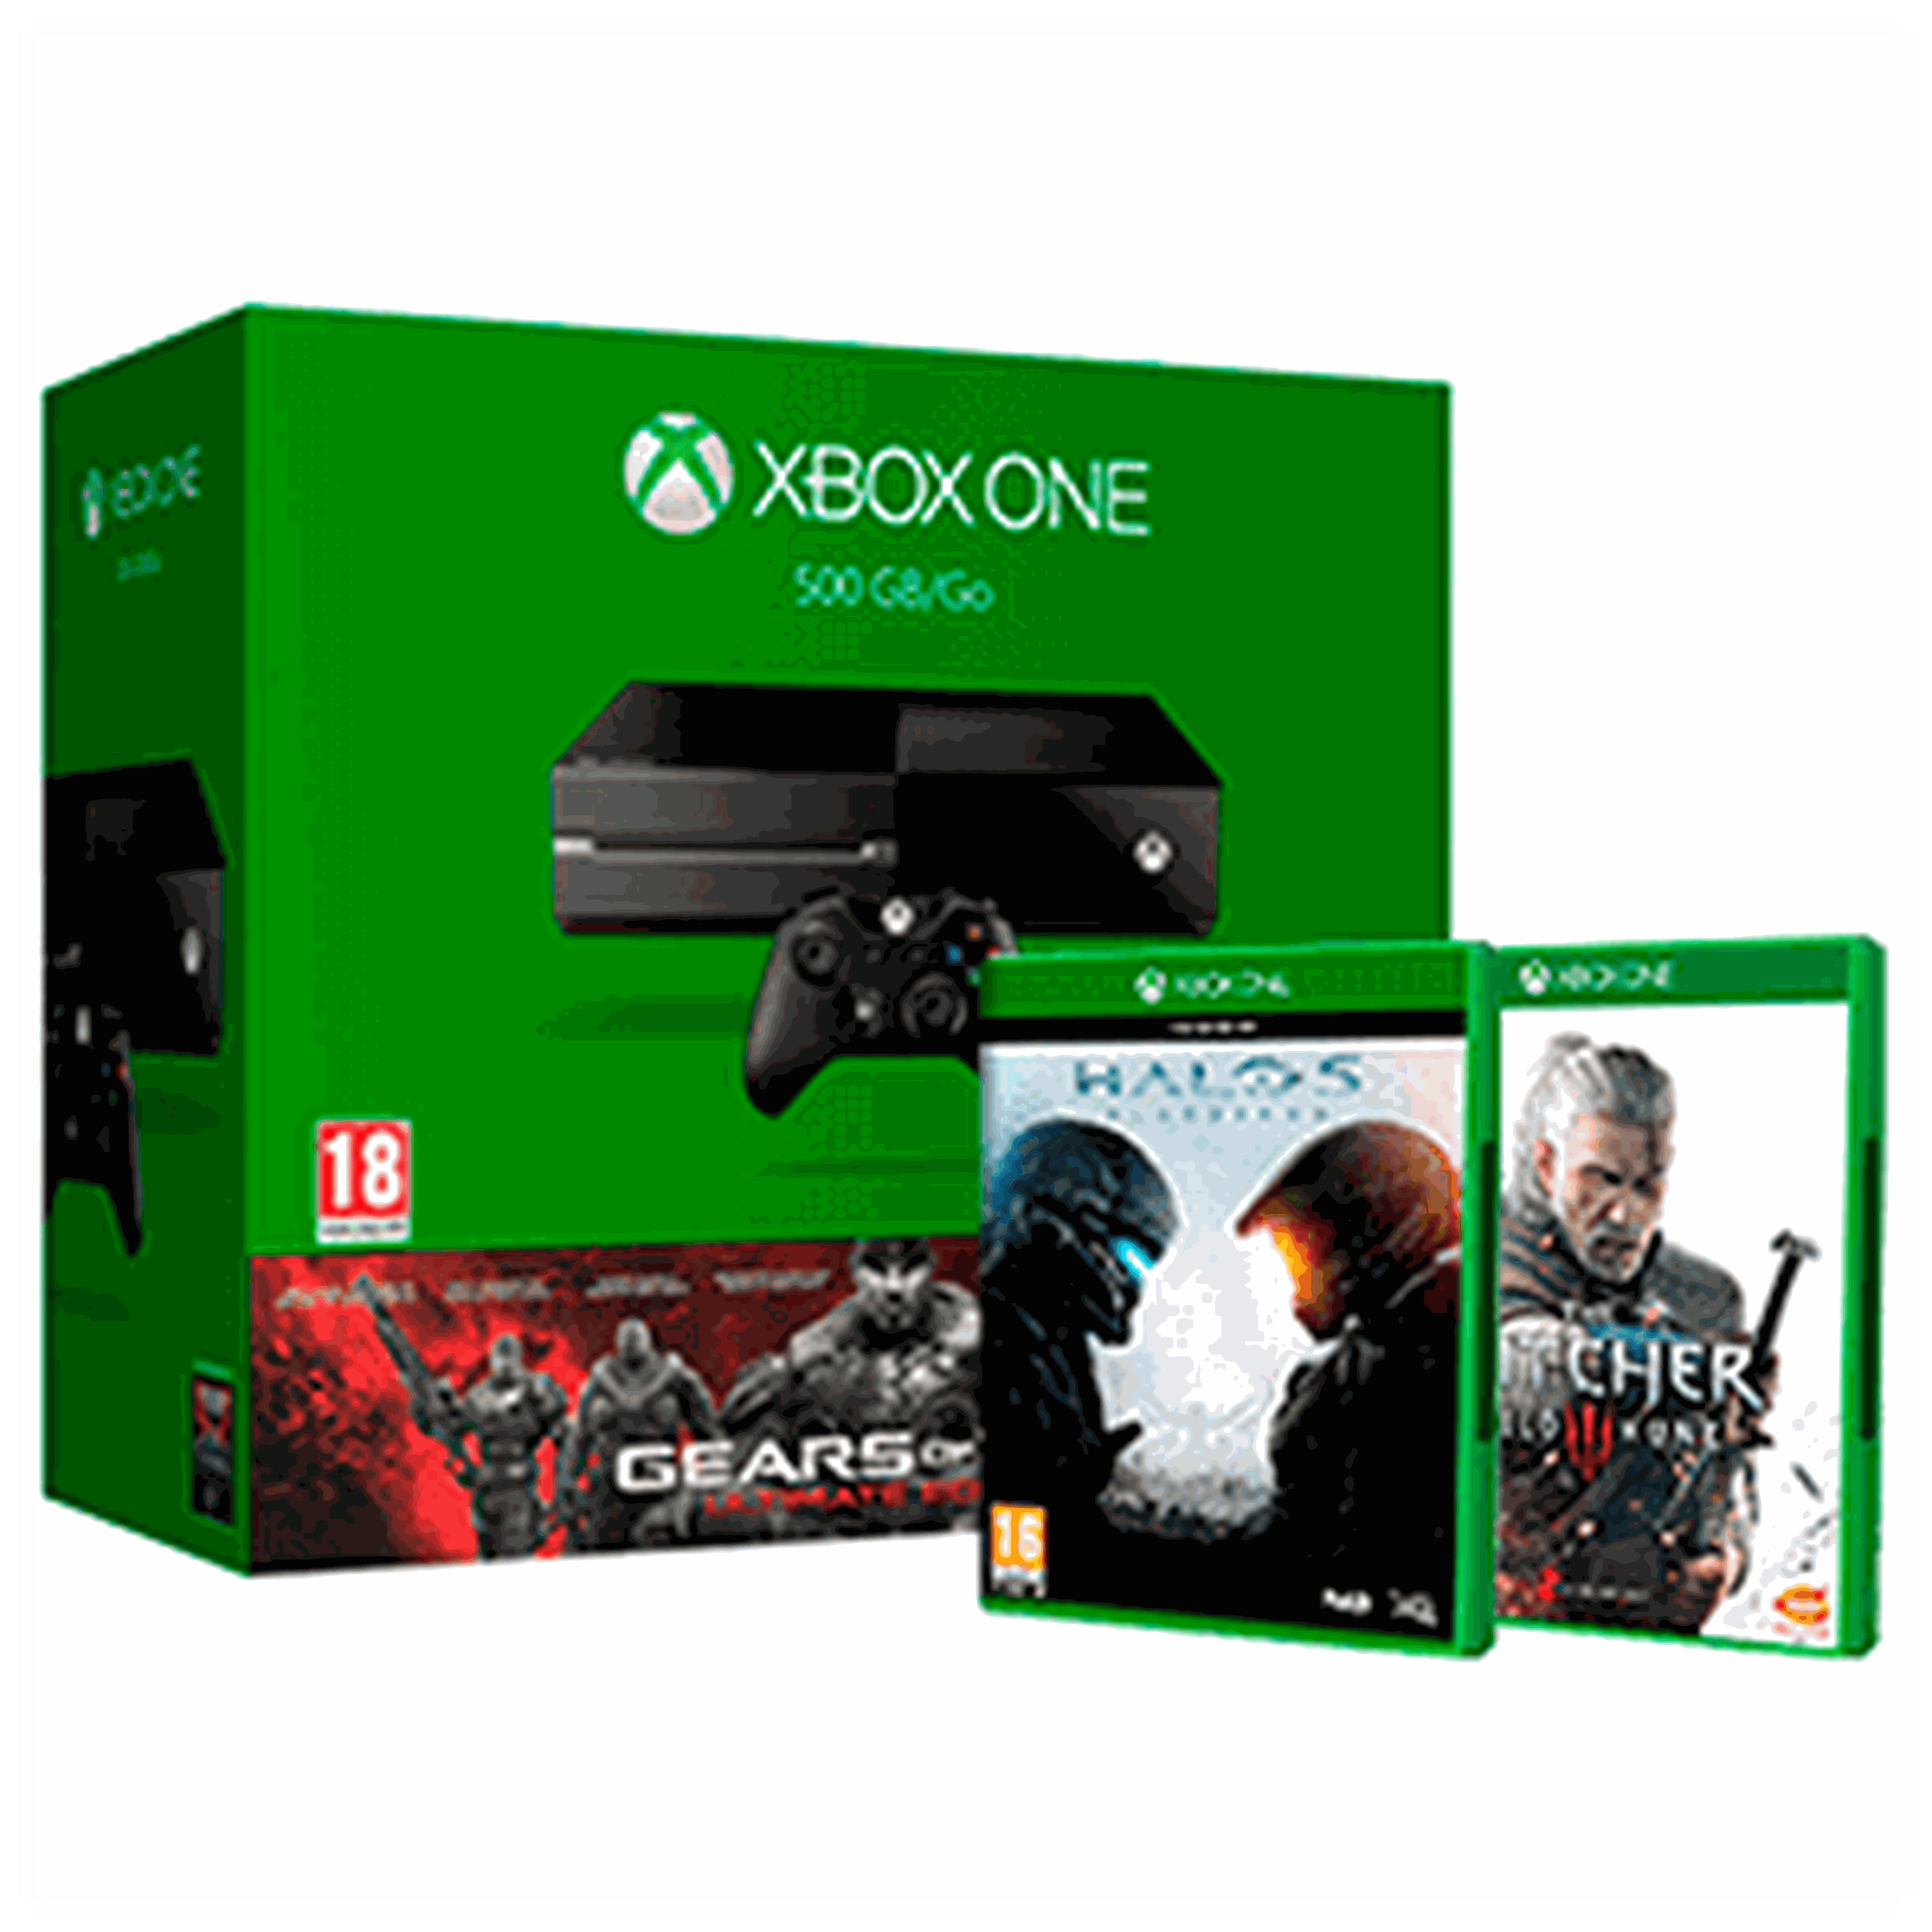 Guía de compras Navidad 2015: Los mejores packs de Xbox One